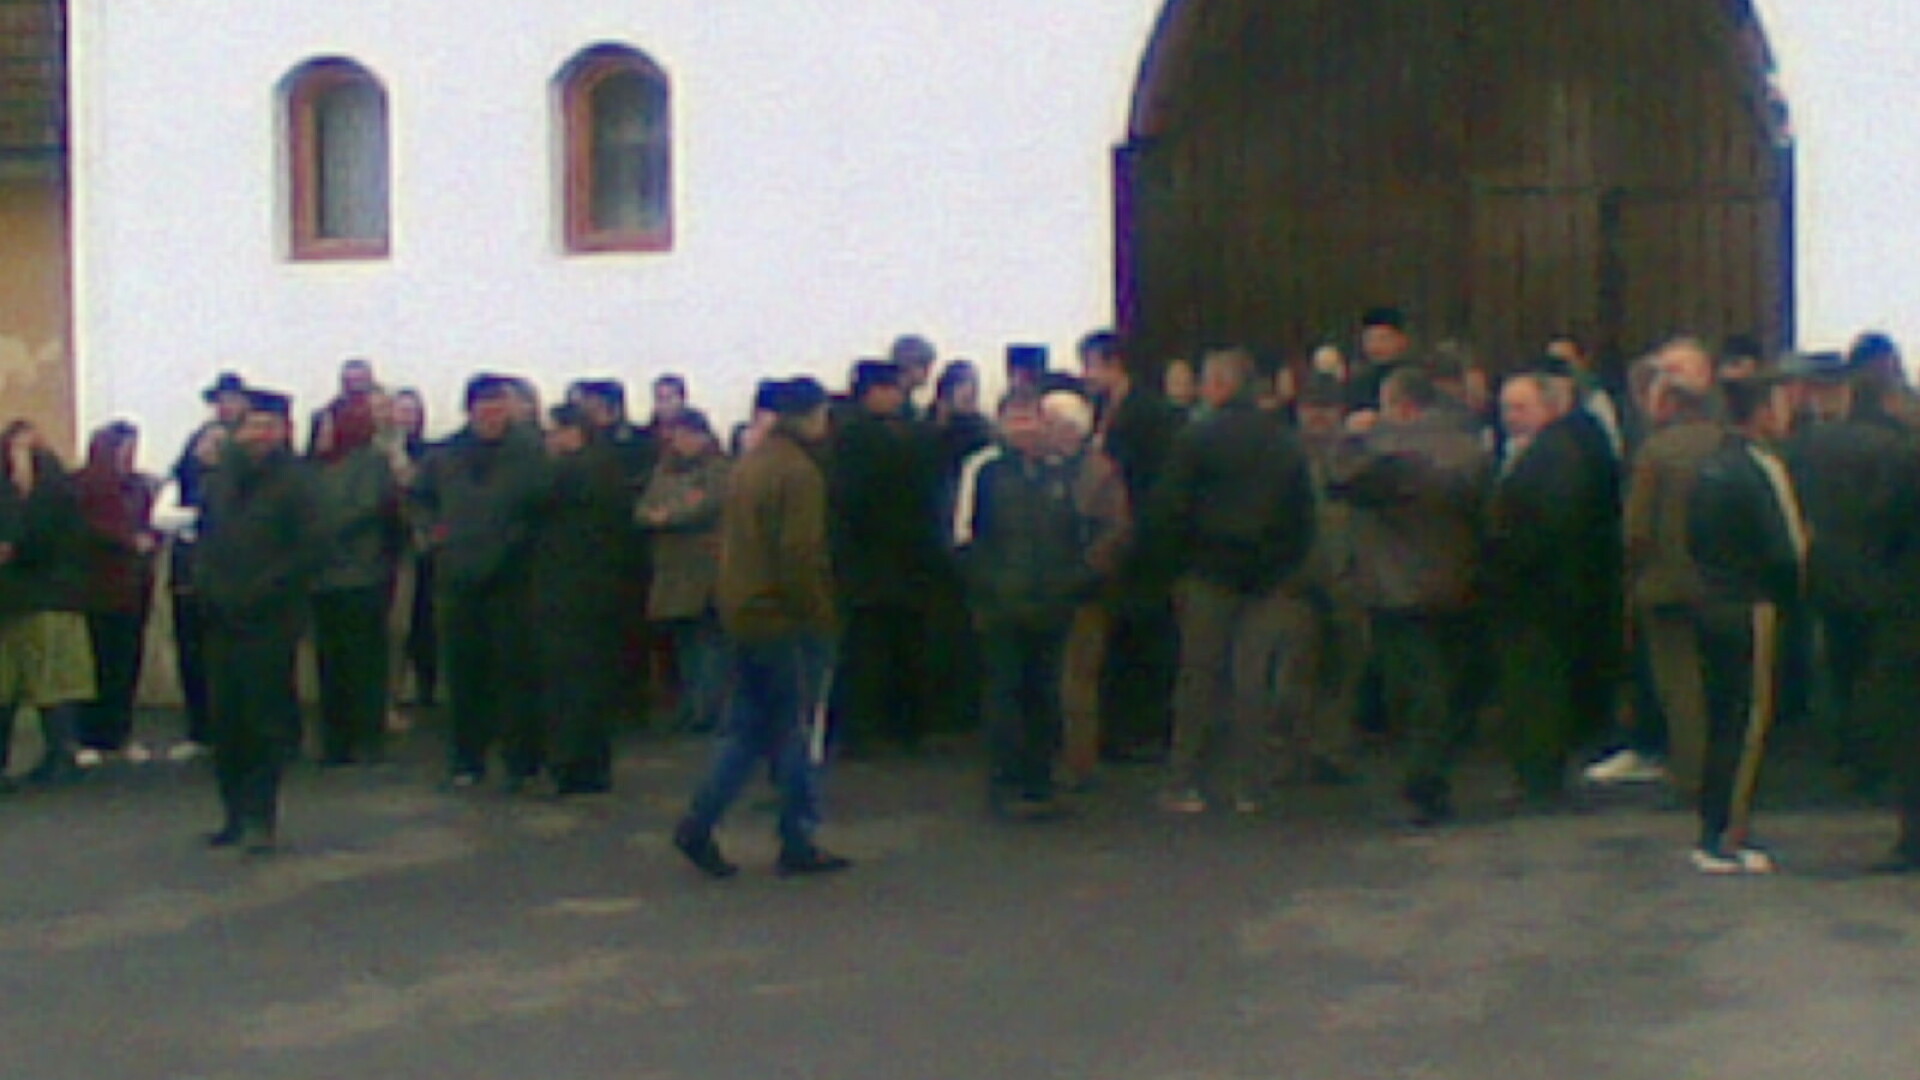 Protest la Manastirea din Bixad. Peste 100 de credinciosi pazesc manastirea sa nu fie retrocedata